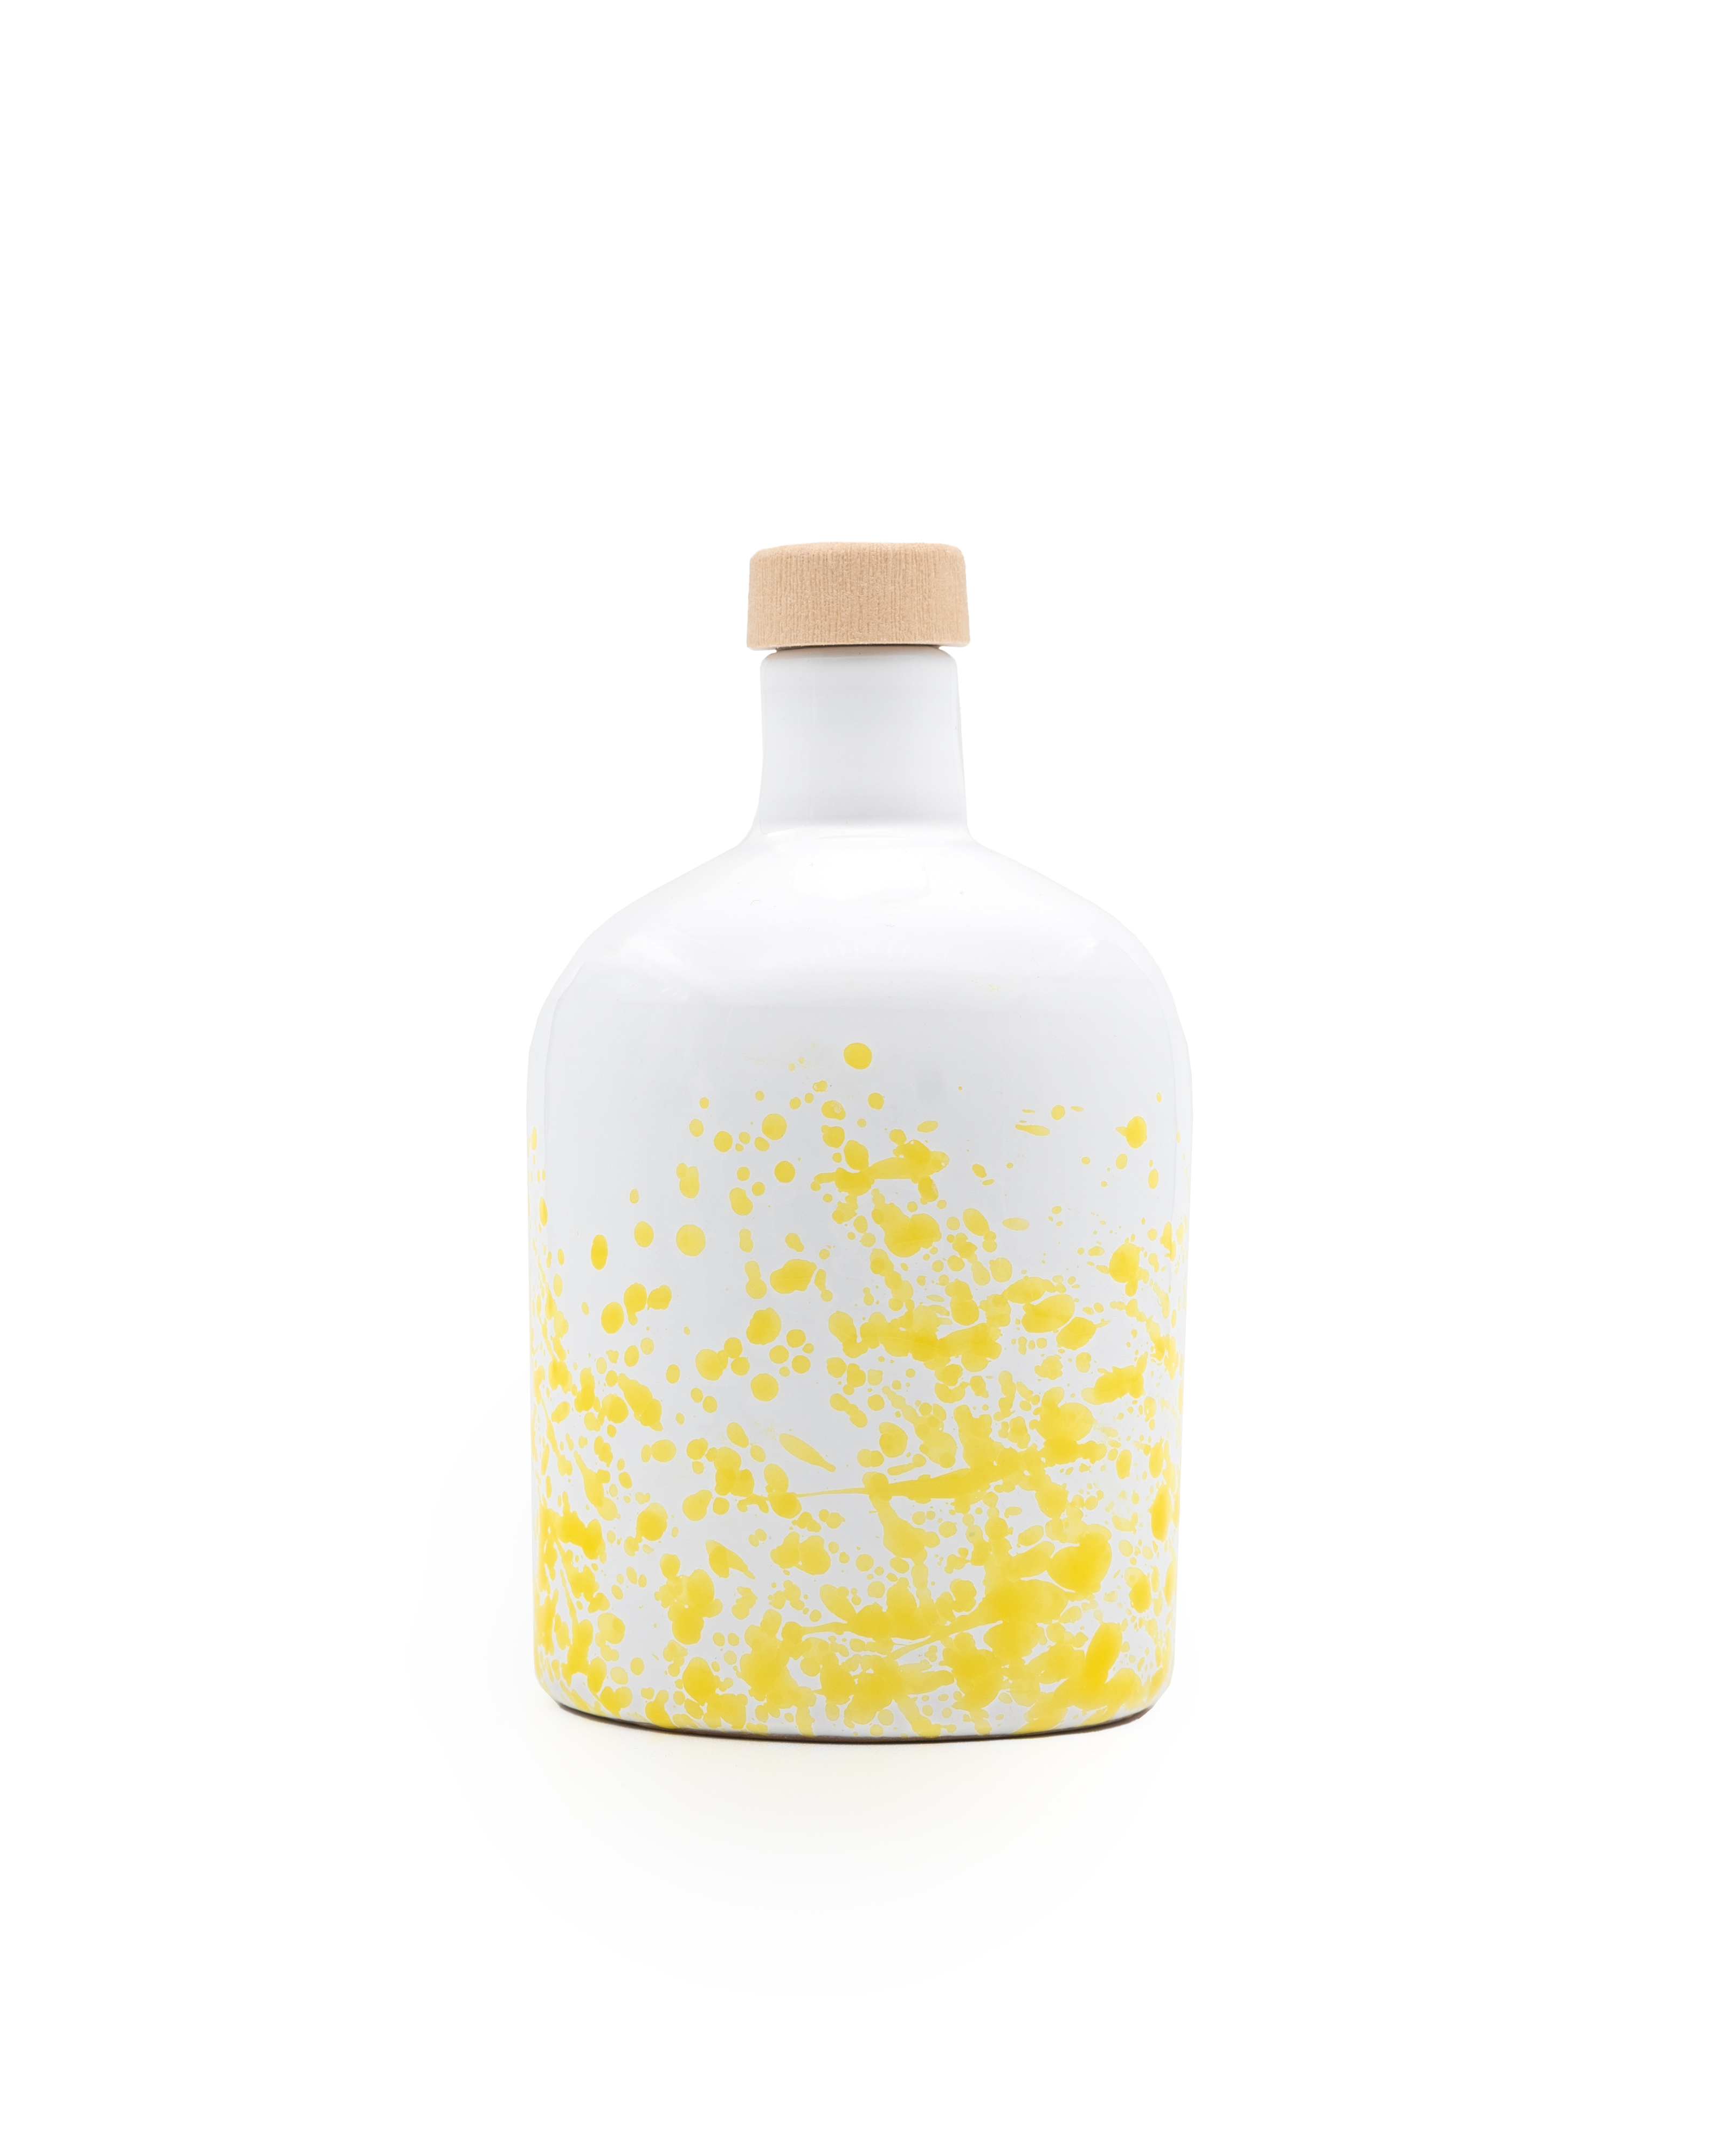 ANDANTE huile d'olive extra vierge bio, filtrée, bouteille en céramique jaune de 250ml.